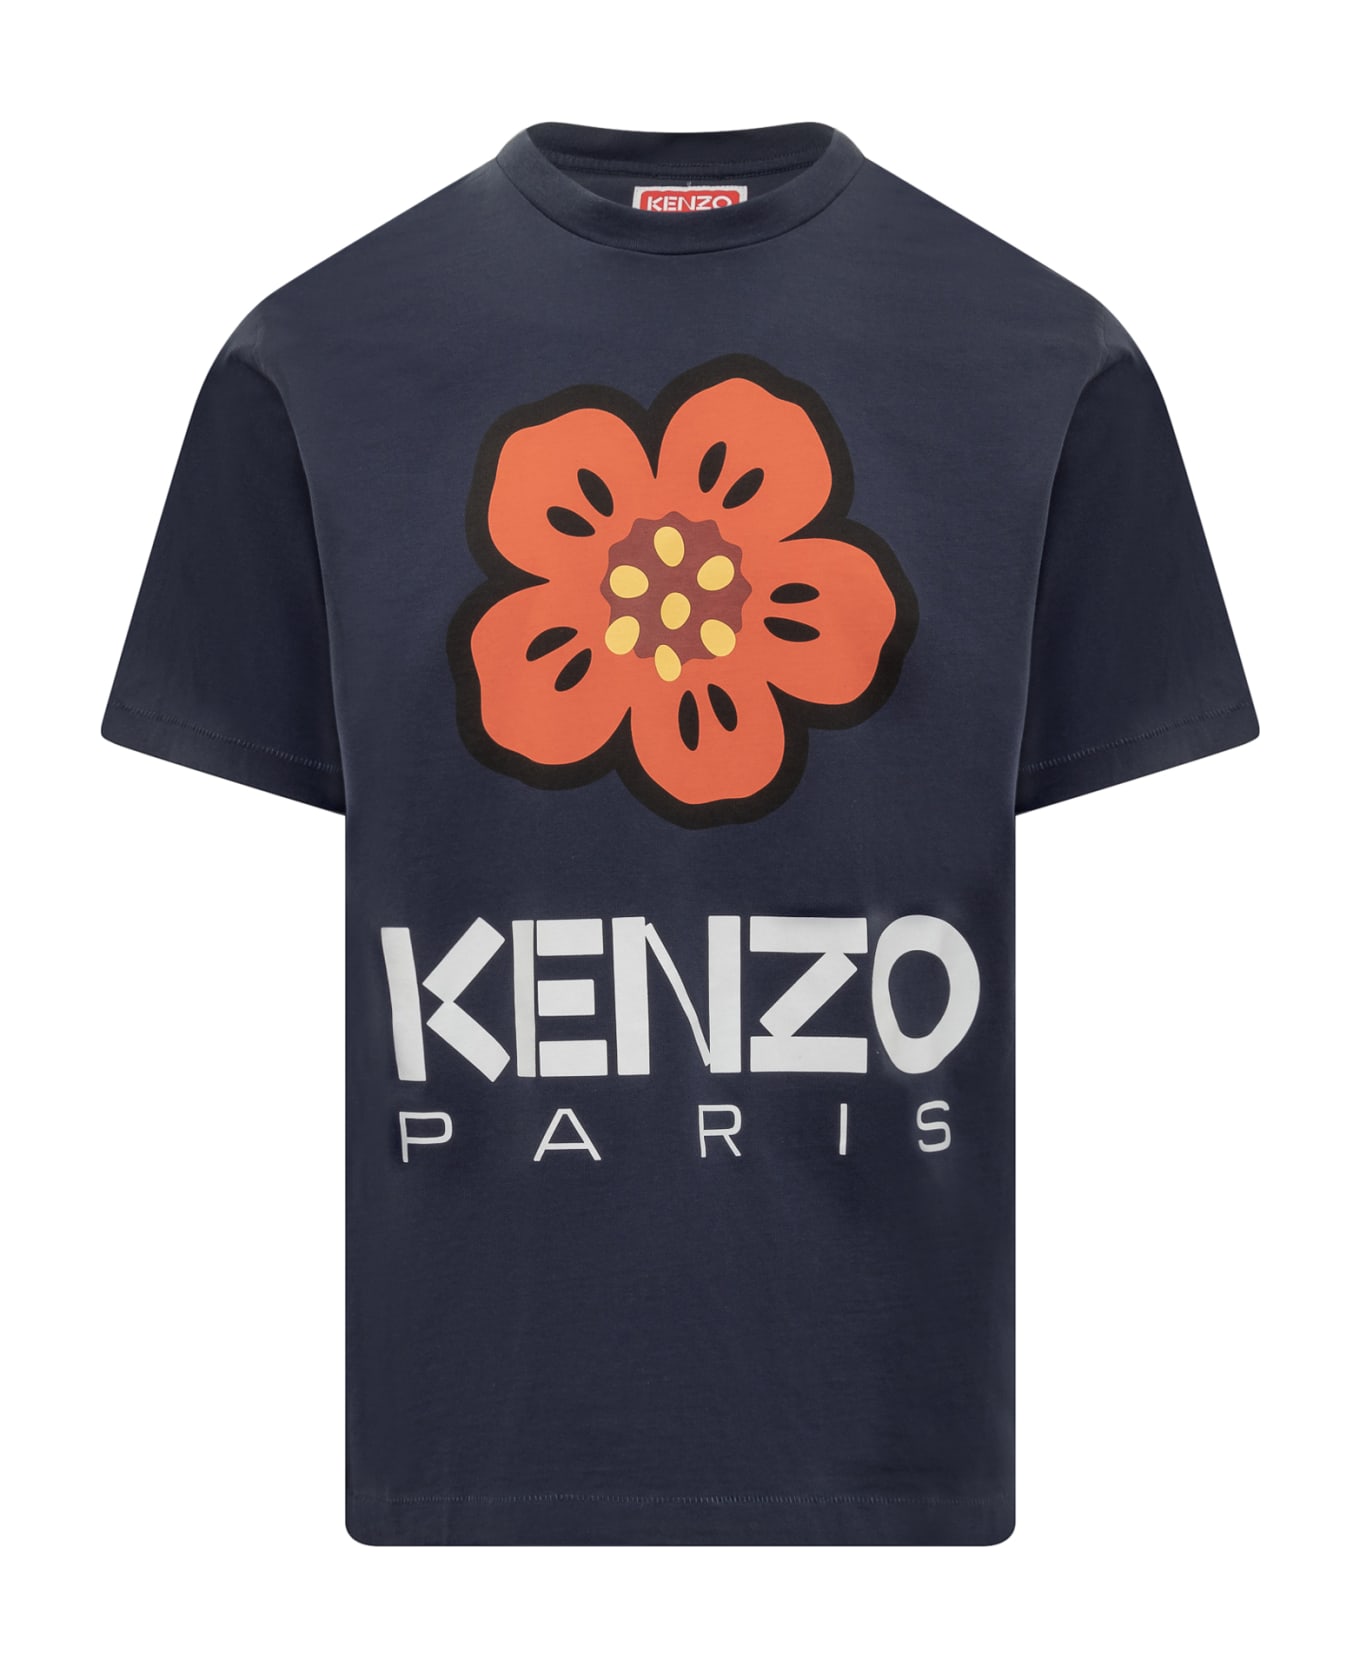 Kenzo Boke Flower T-shirt - Bleu Nuit シャツ